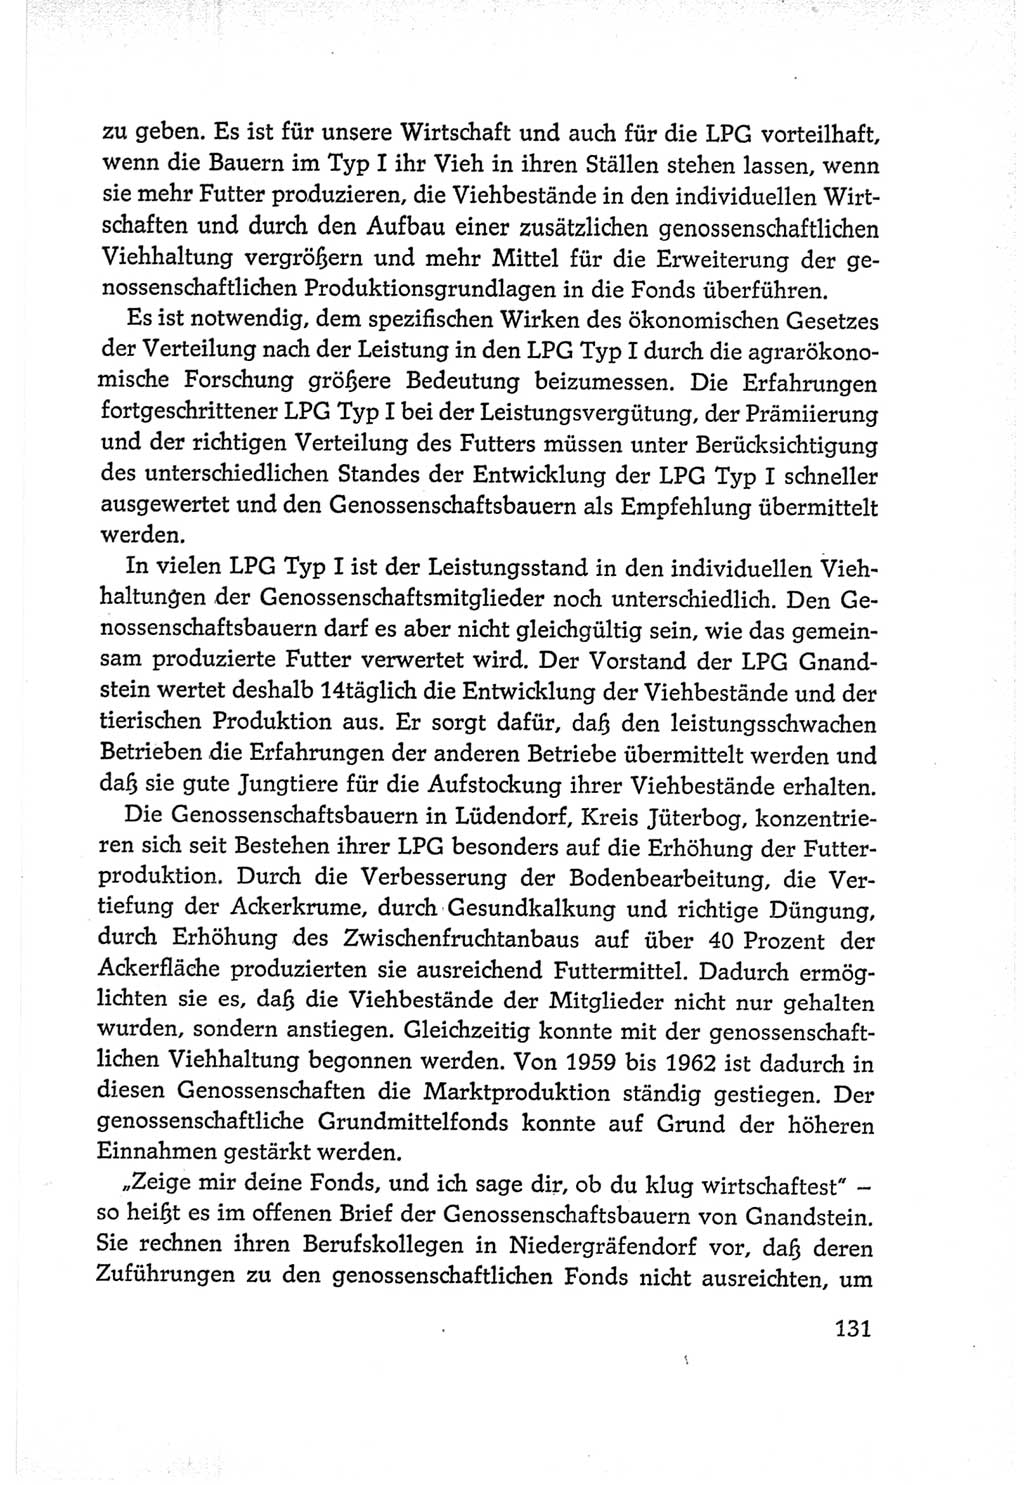 Protokoll der Verhandlungen des Ⅵ. Parteitages der Sozialistischen Einheitspartei Deutschlands (SED) [Deutsche Demokratische Republik (DDR)] 1963, Band Ⅰ, Seite 131 (Prot. Verh. Ⅵ. PT SED DDR 1963, Bd. Ⅰ, S. 131)